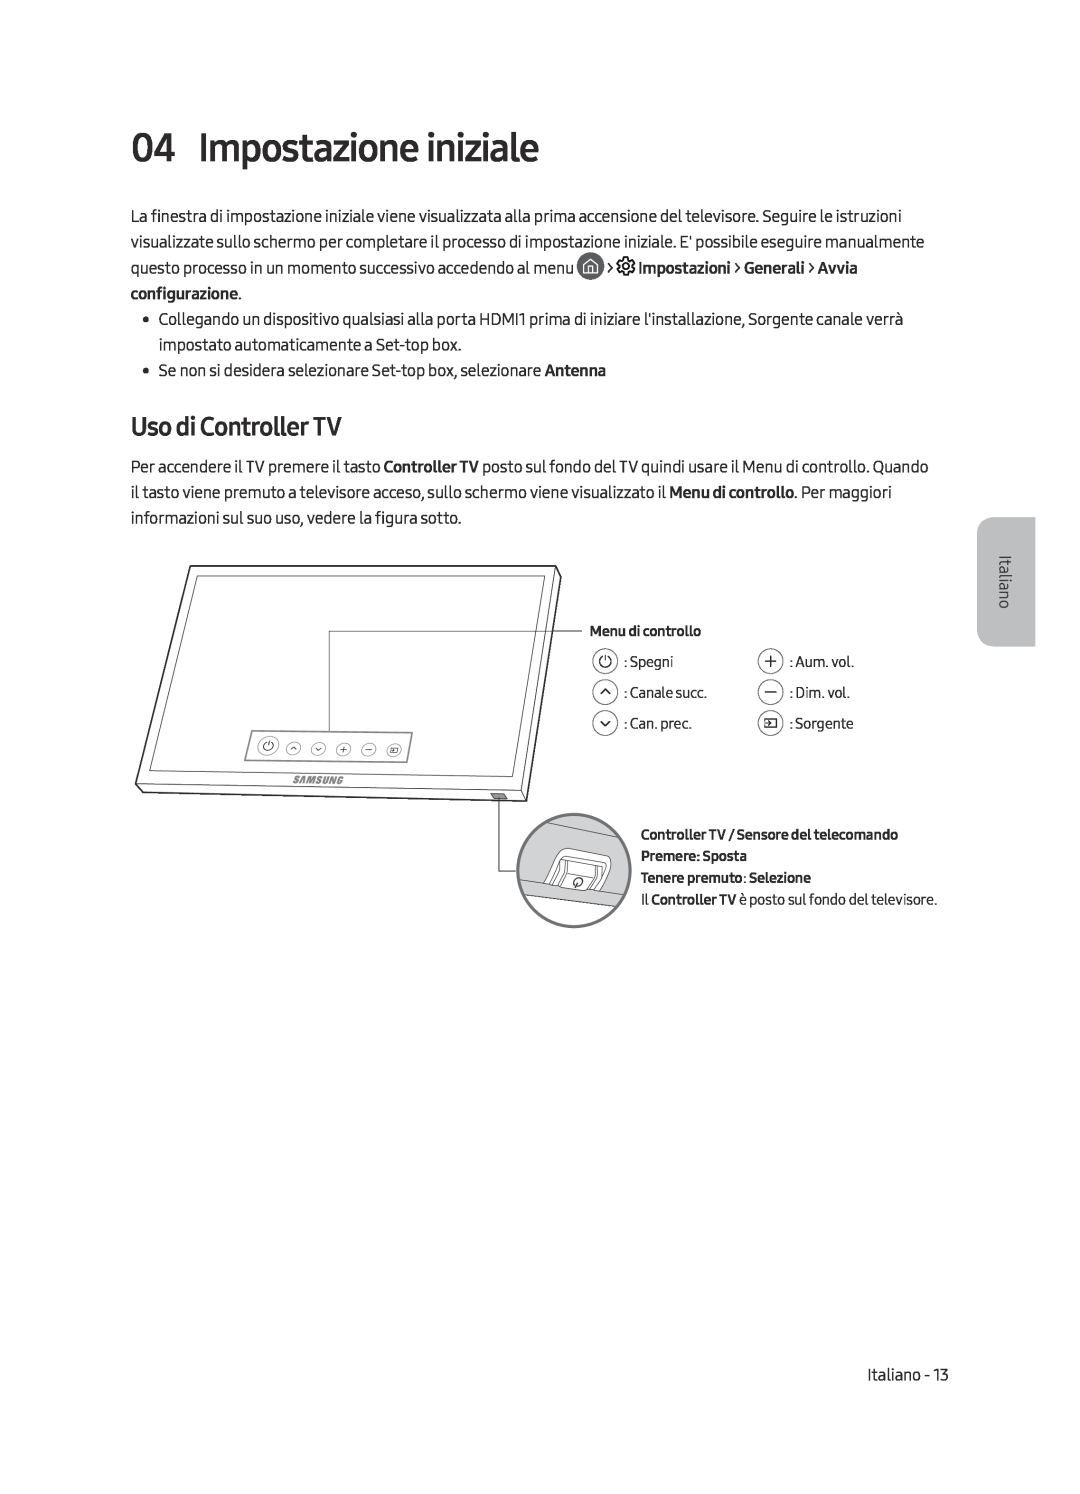 Samsung UE65MU7079TXZG, UE49MU7049TXZG, UE49MU7079TXZG, UE49MU7059TXZG manual Impostazione iniziale, Uso di Controller TV 